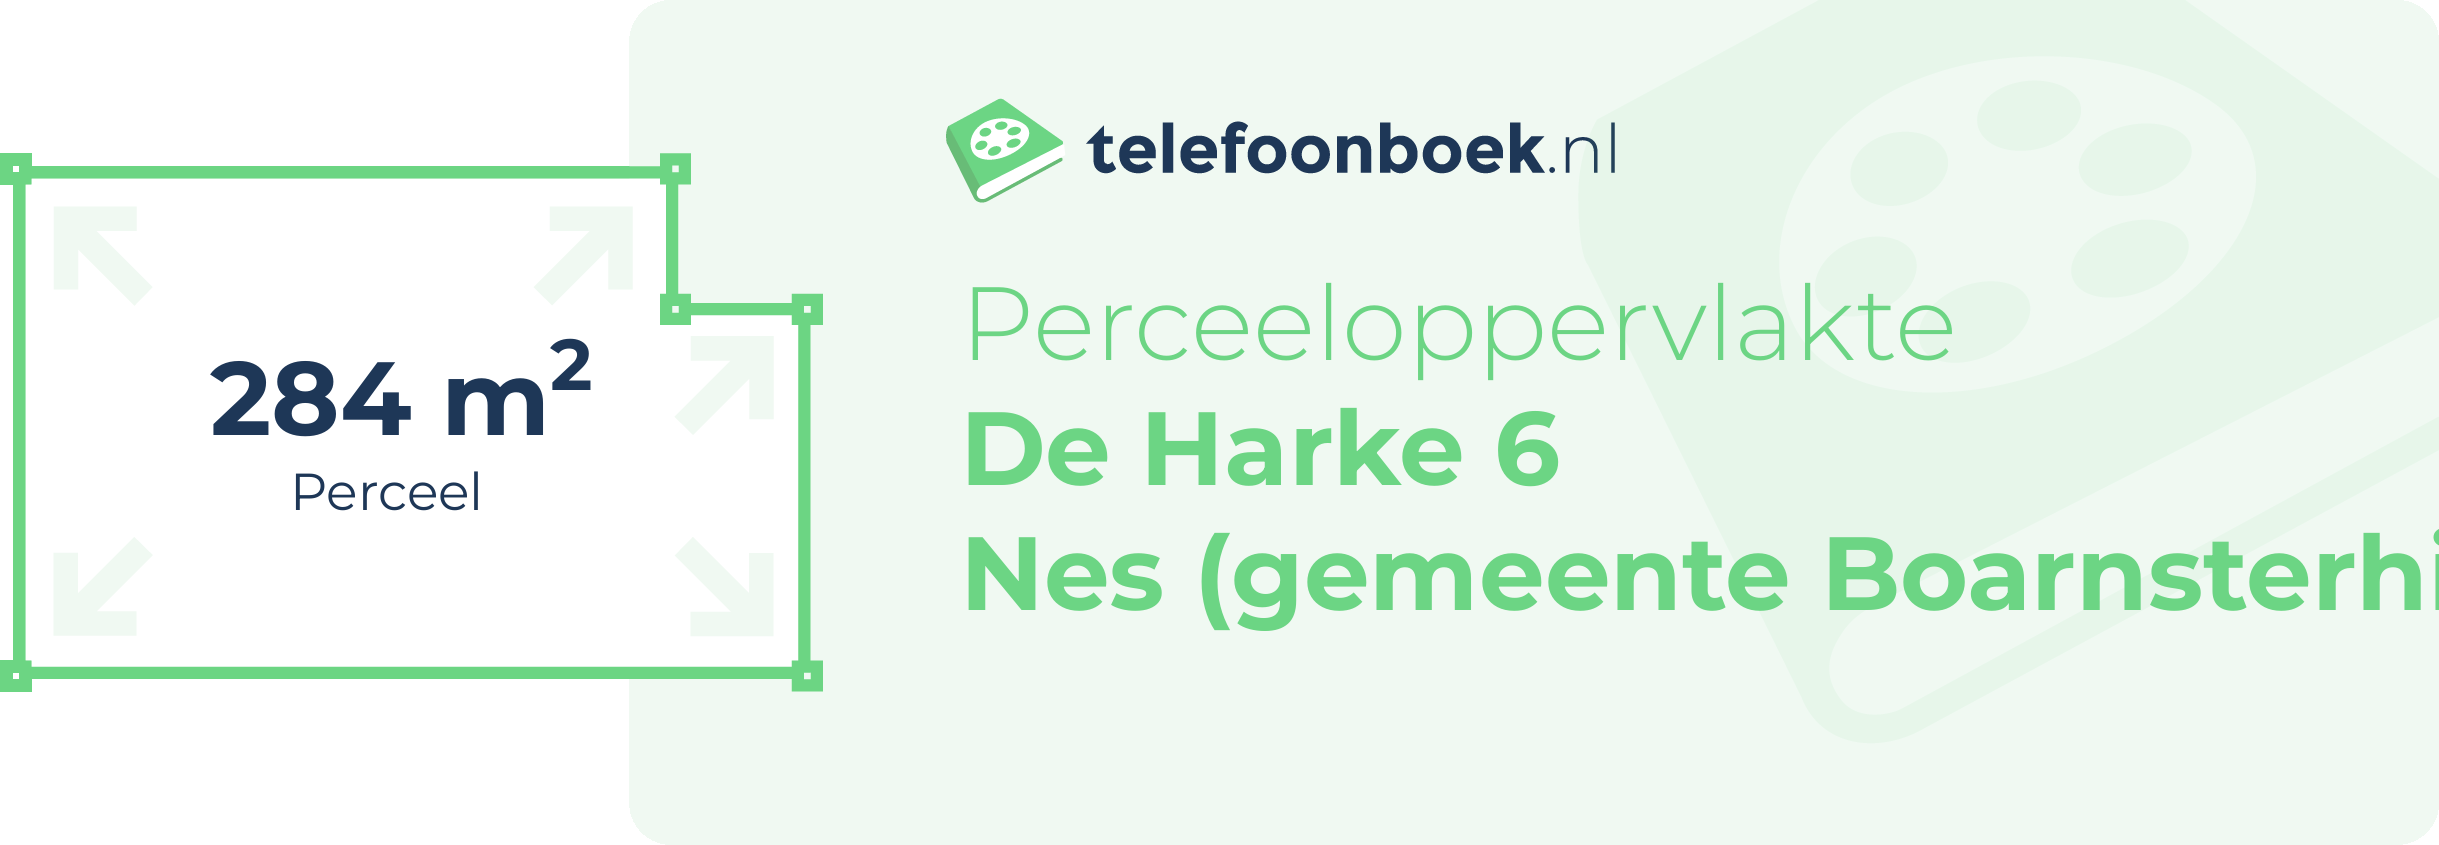 Perceeloppervlakte De Harke 6 Nes (gemeente Boarnsterhim Friesland)